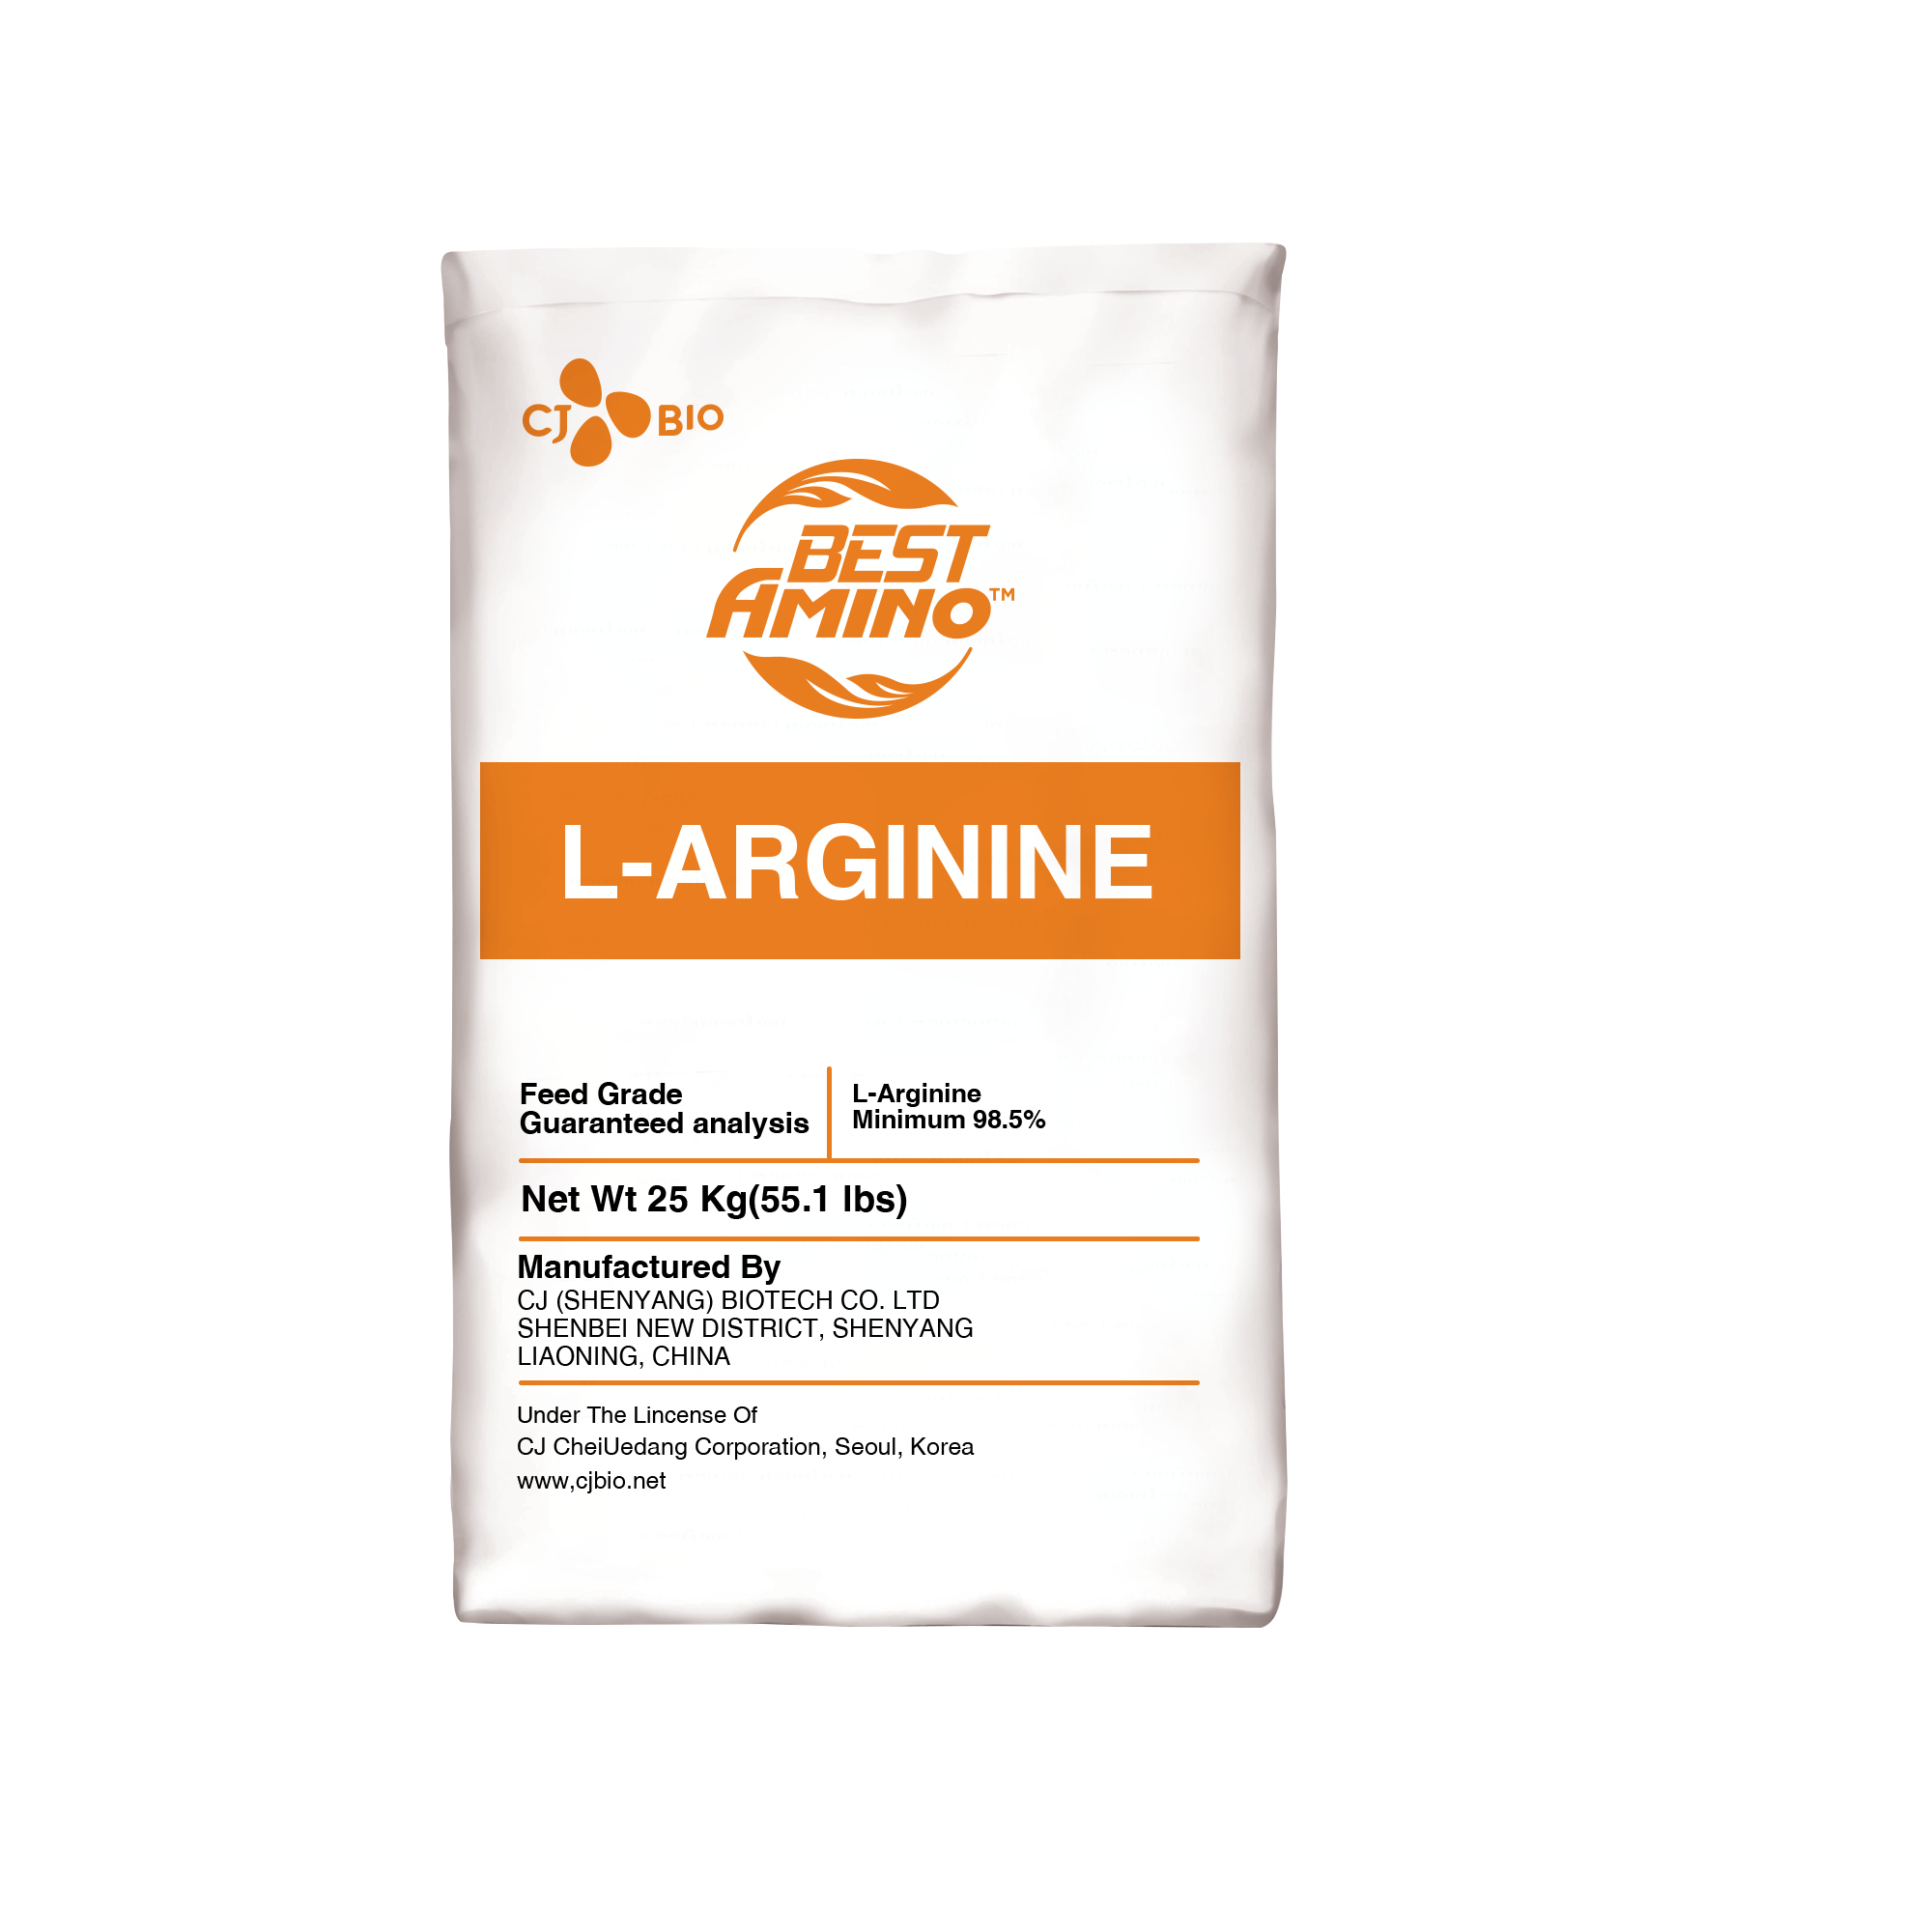 بست امينو ل- ارجينين 98.5% (Best Amino L-Arginine 98.5%)